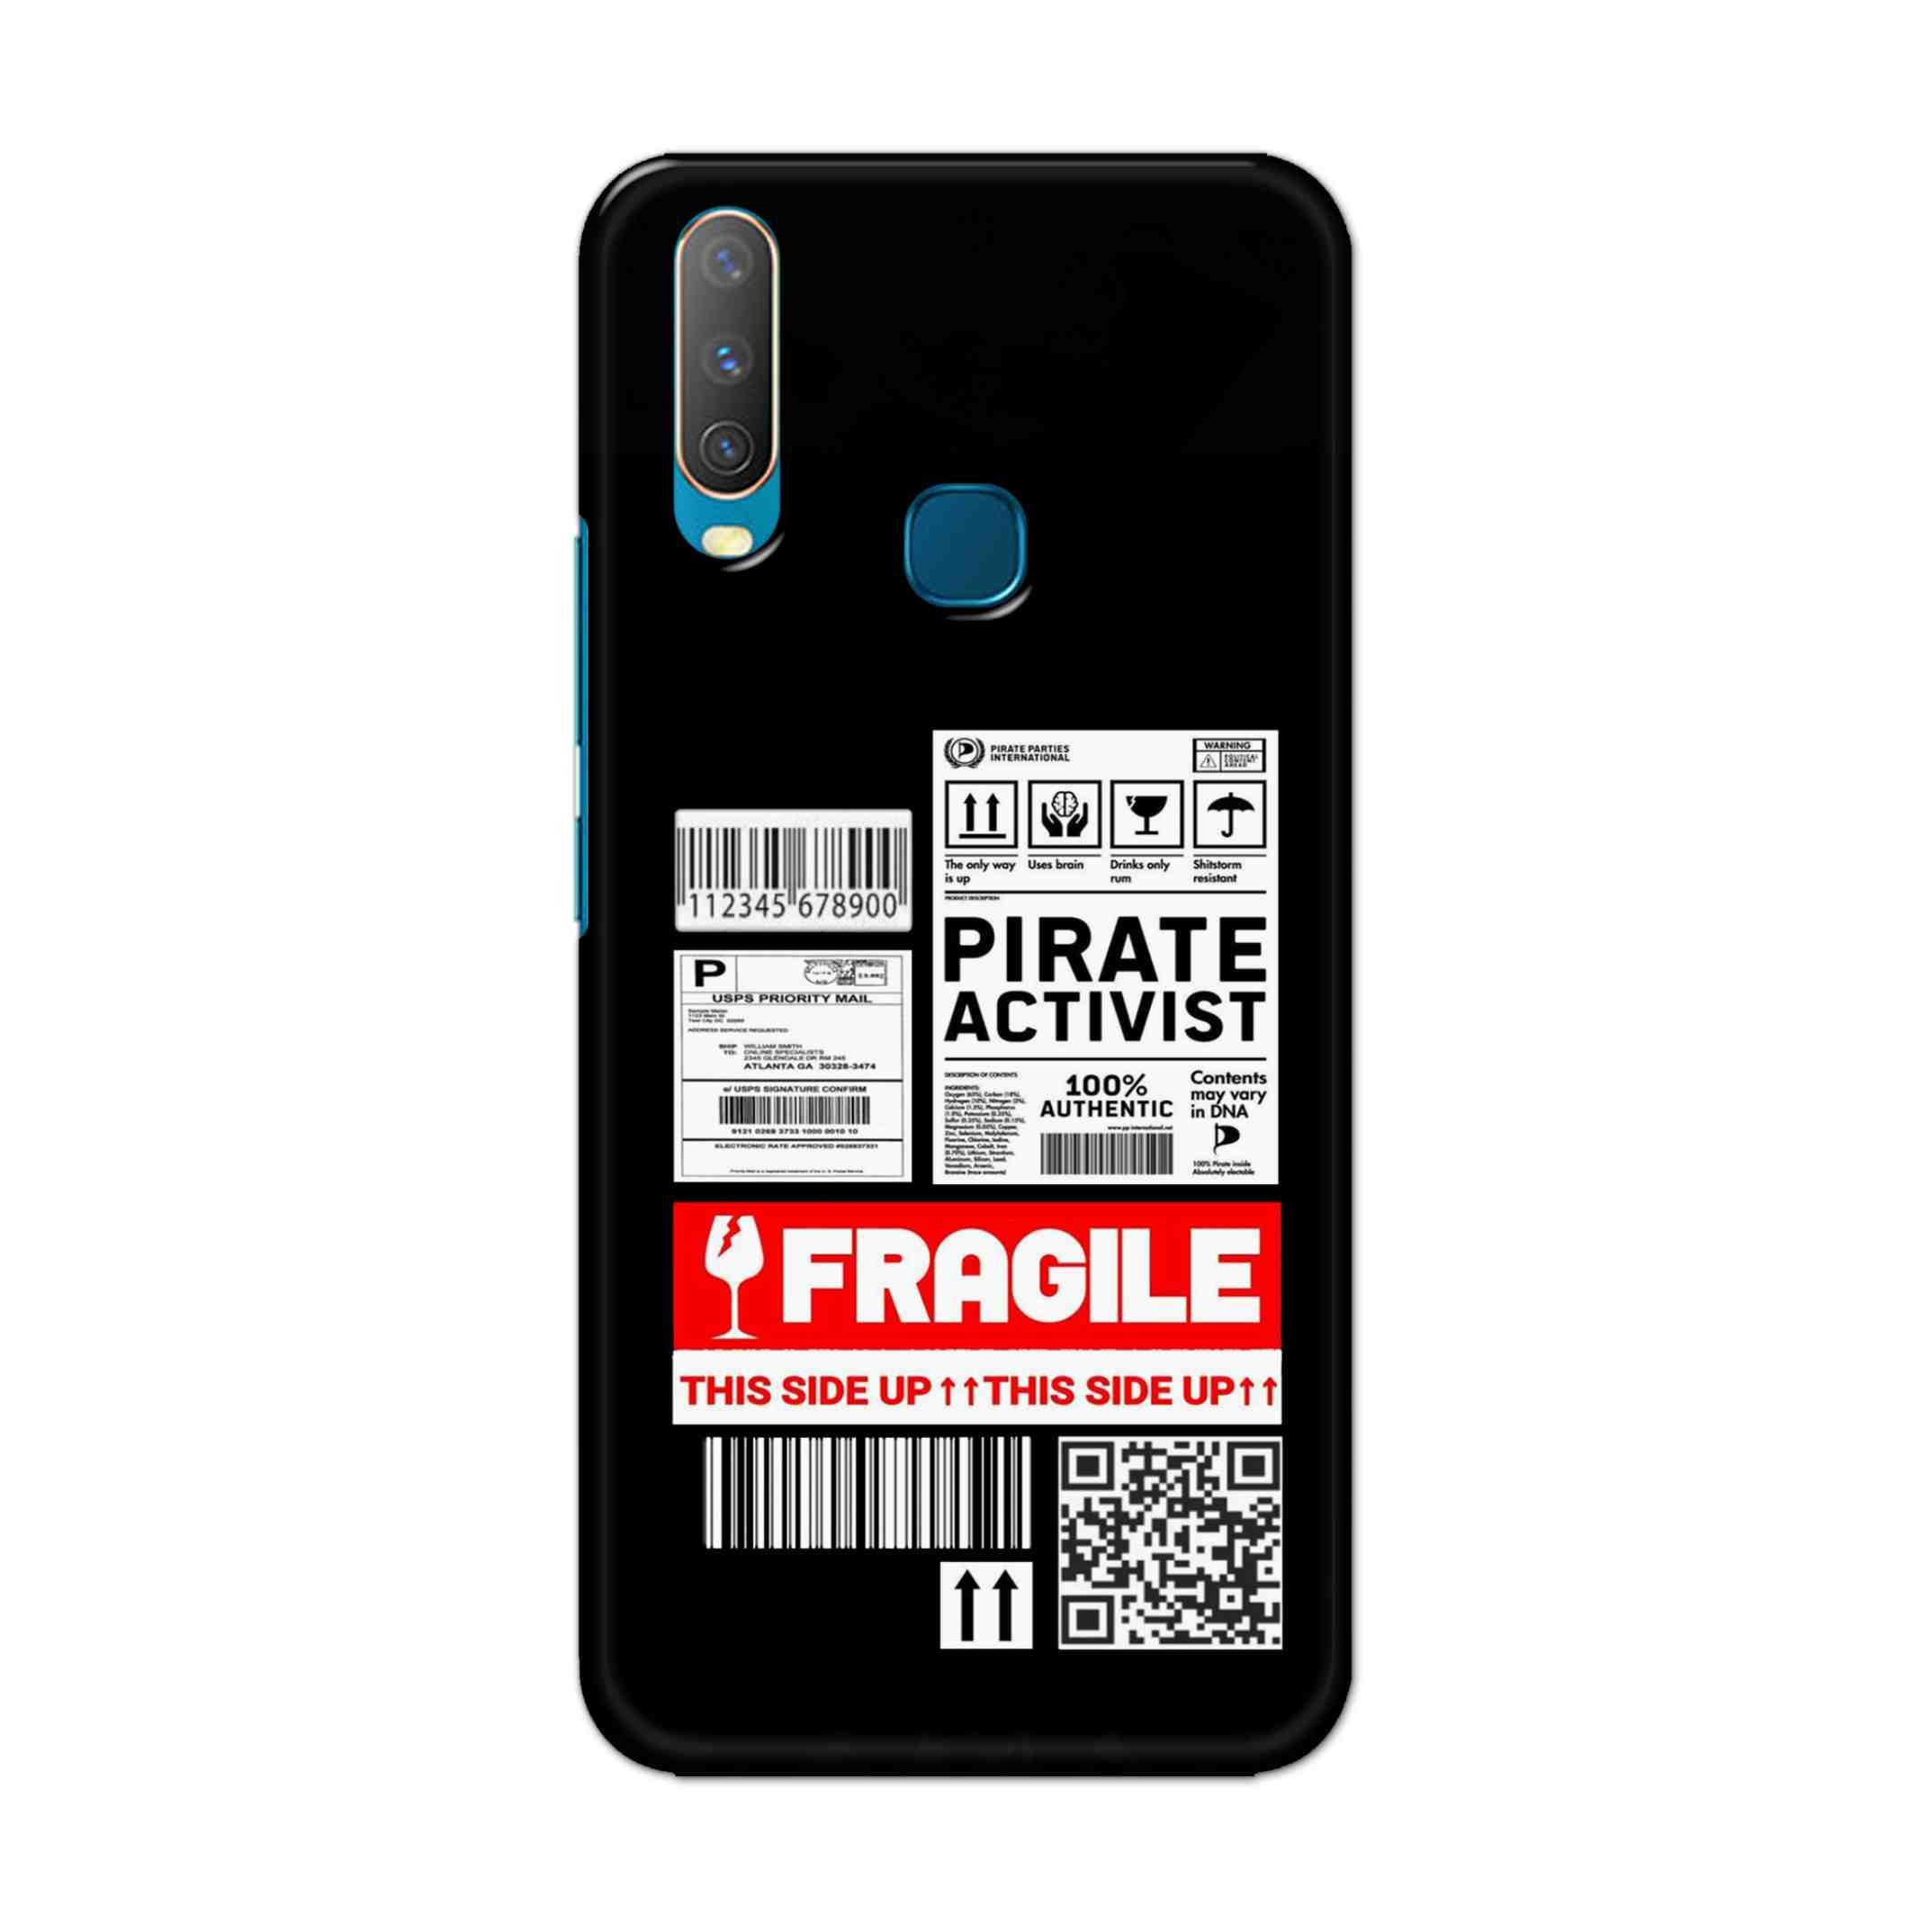 Buy Fragile Hard Back Mobile Phone Case Cover For Vivo Y17 / U10 Online